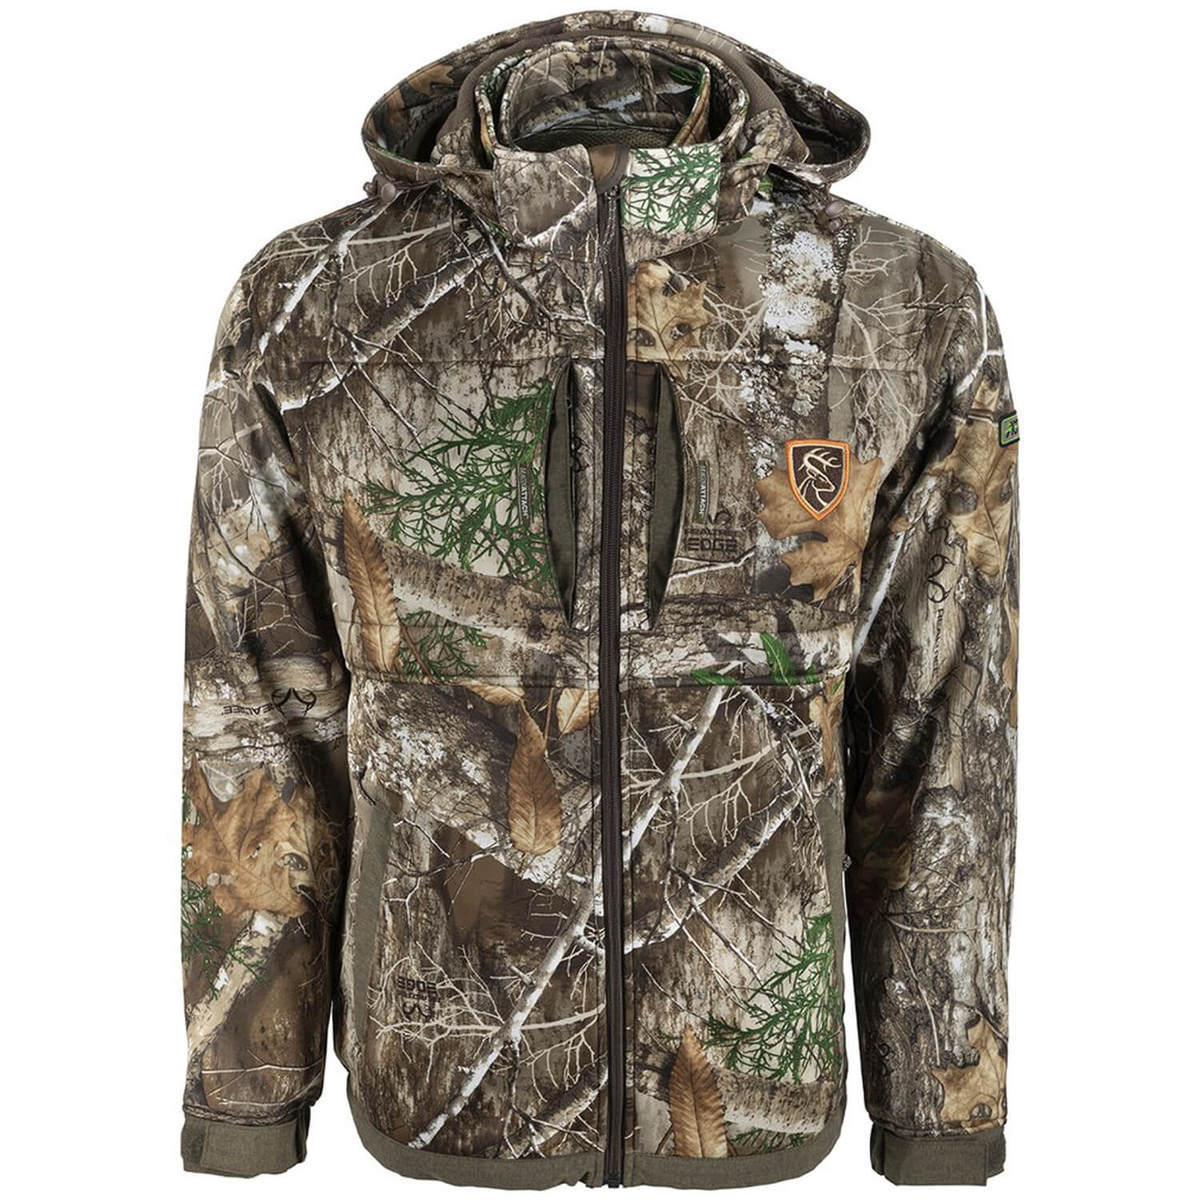 Hunter Series Wind-Defender Fleece Jacket